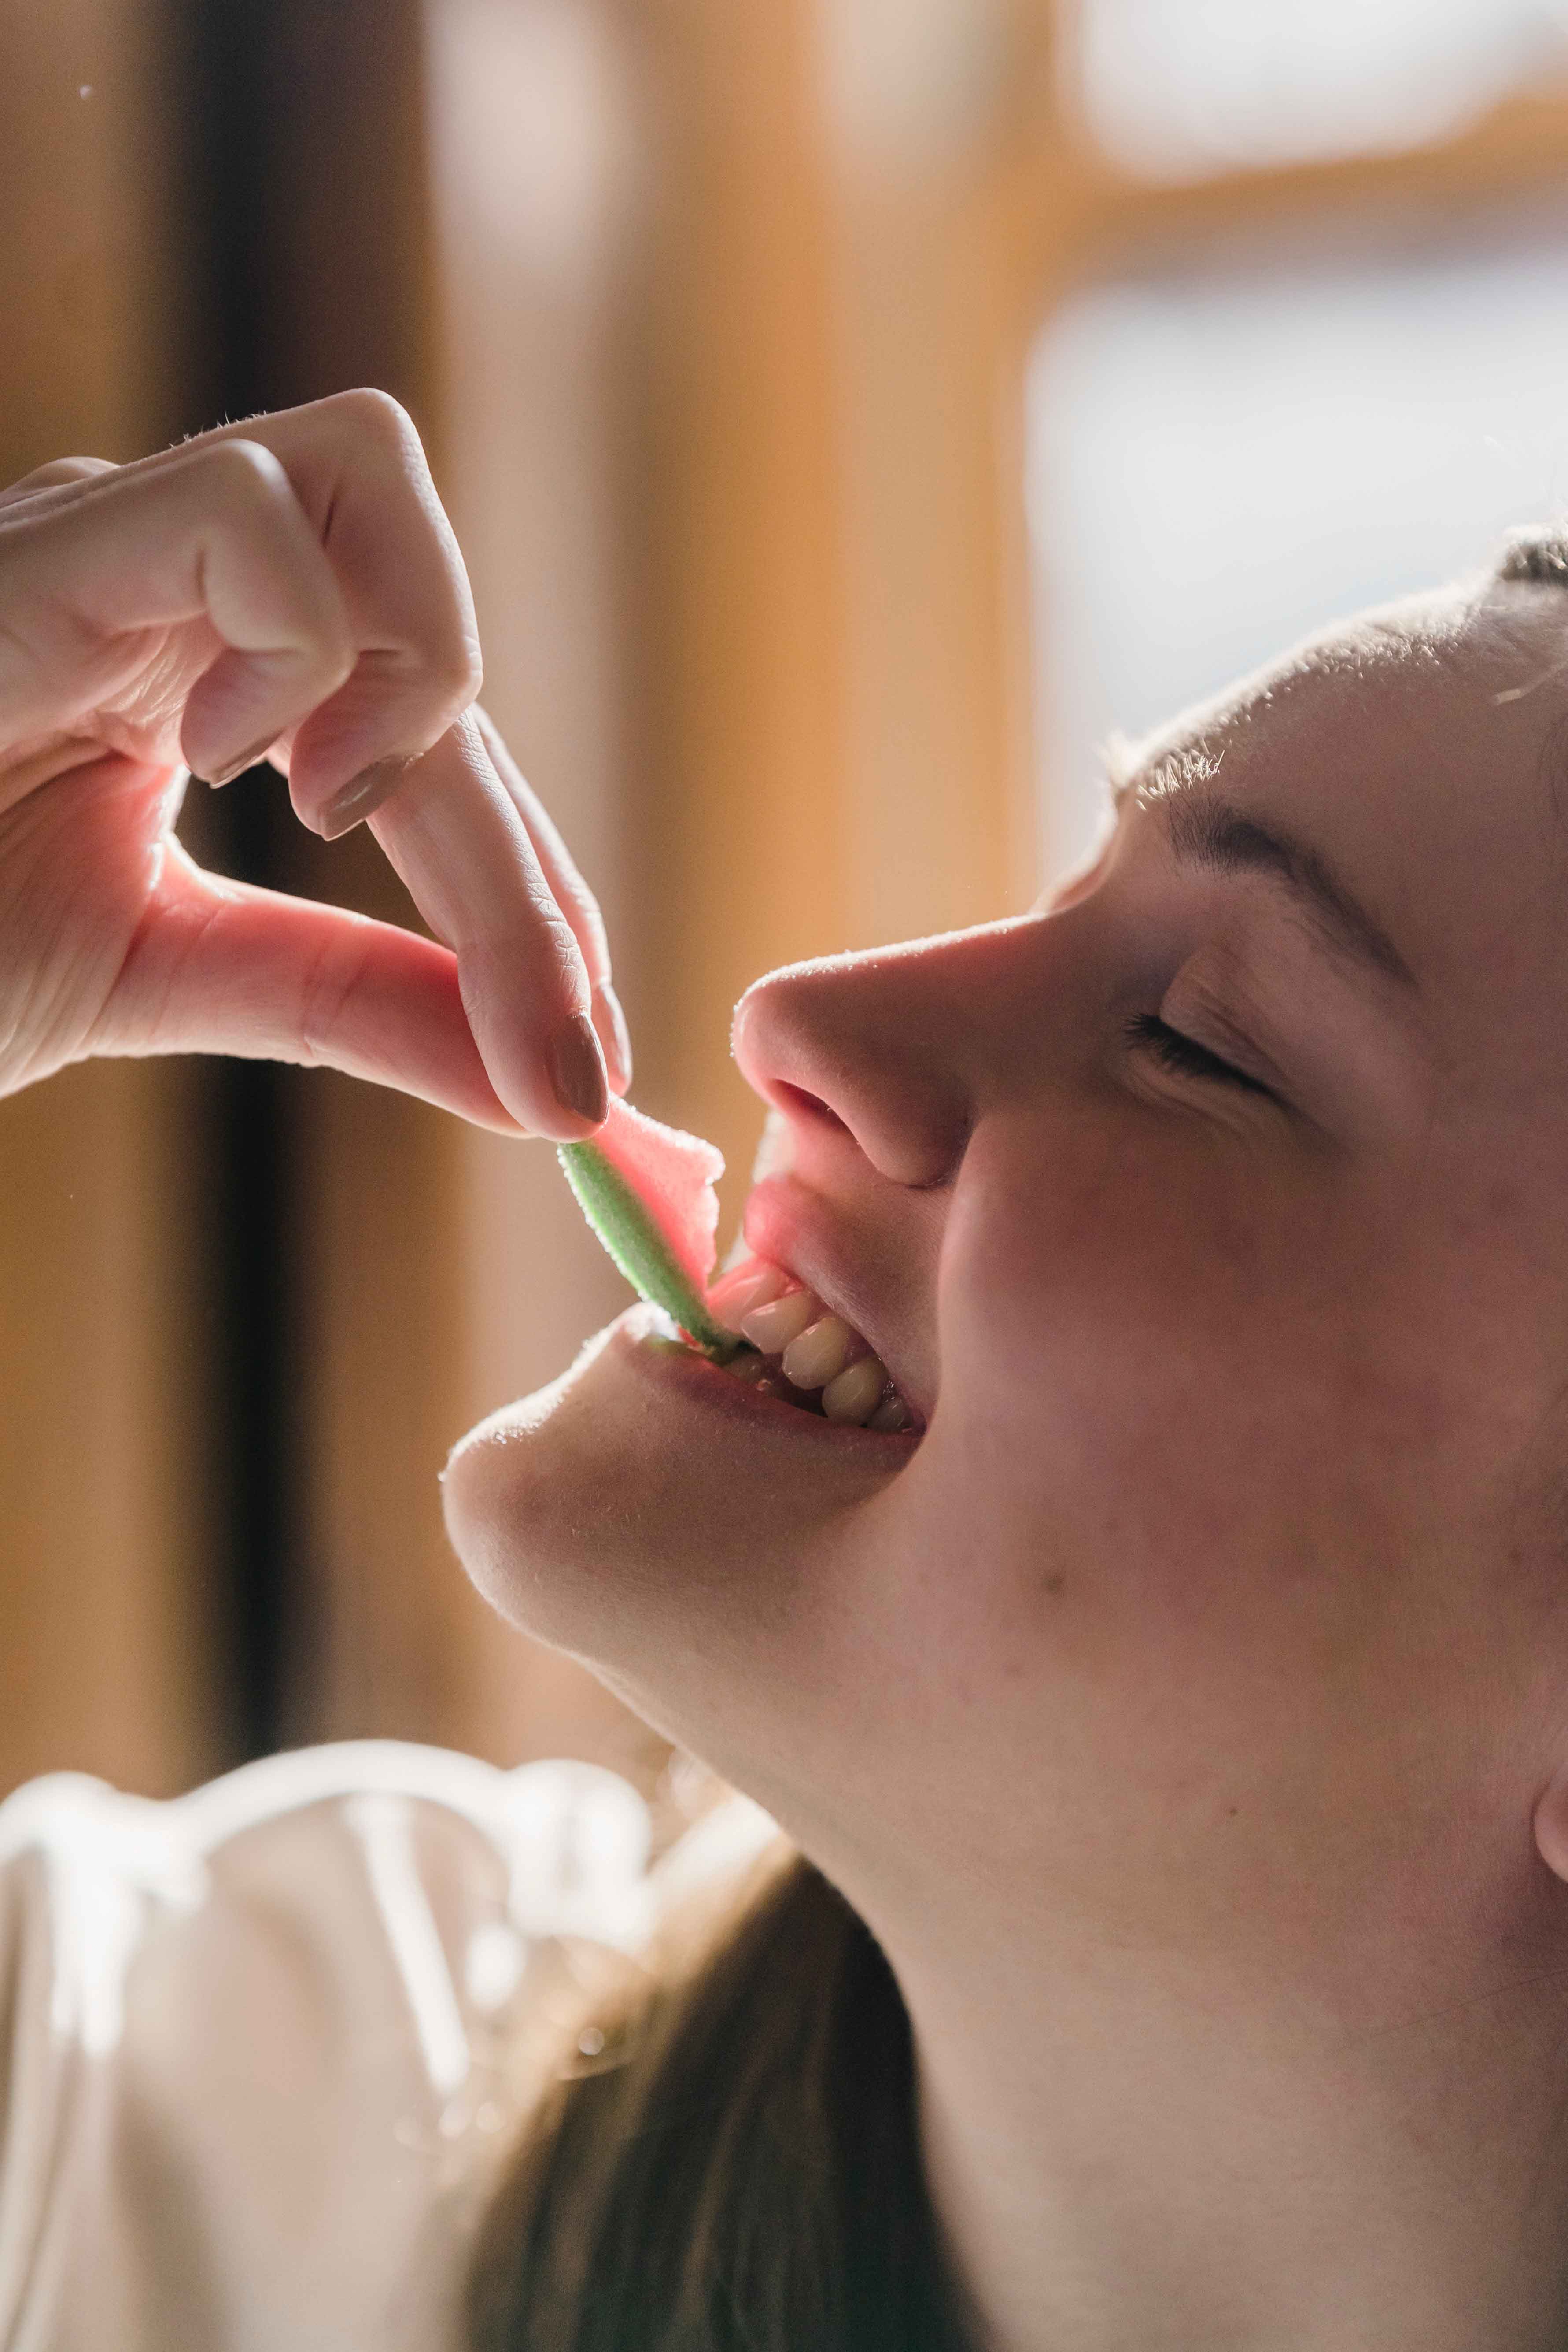 Comida entre los dientes: cómo librarte de forma segura y evitar el mal aliento